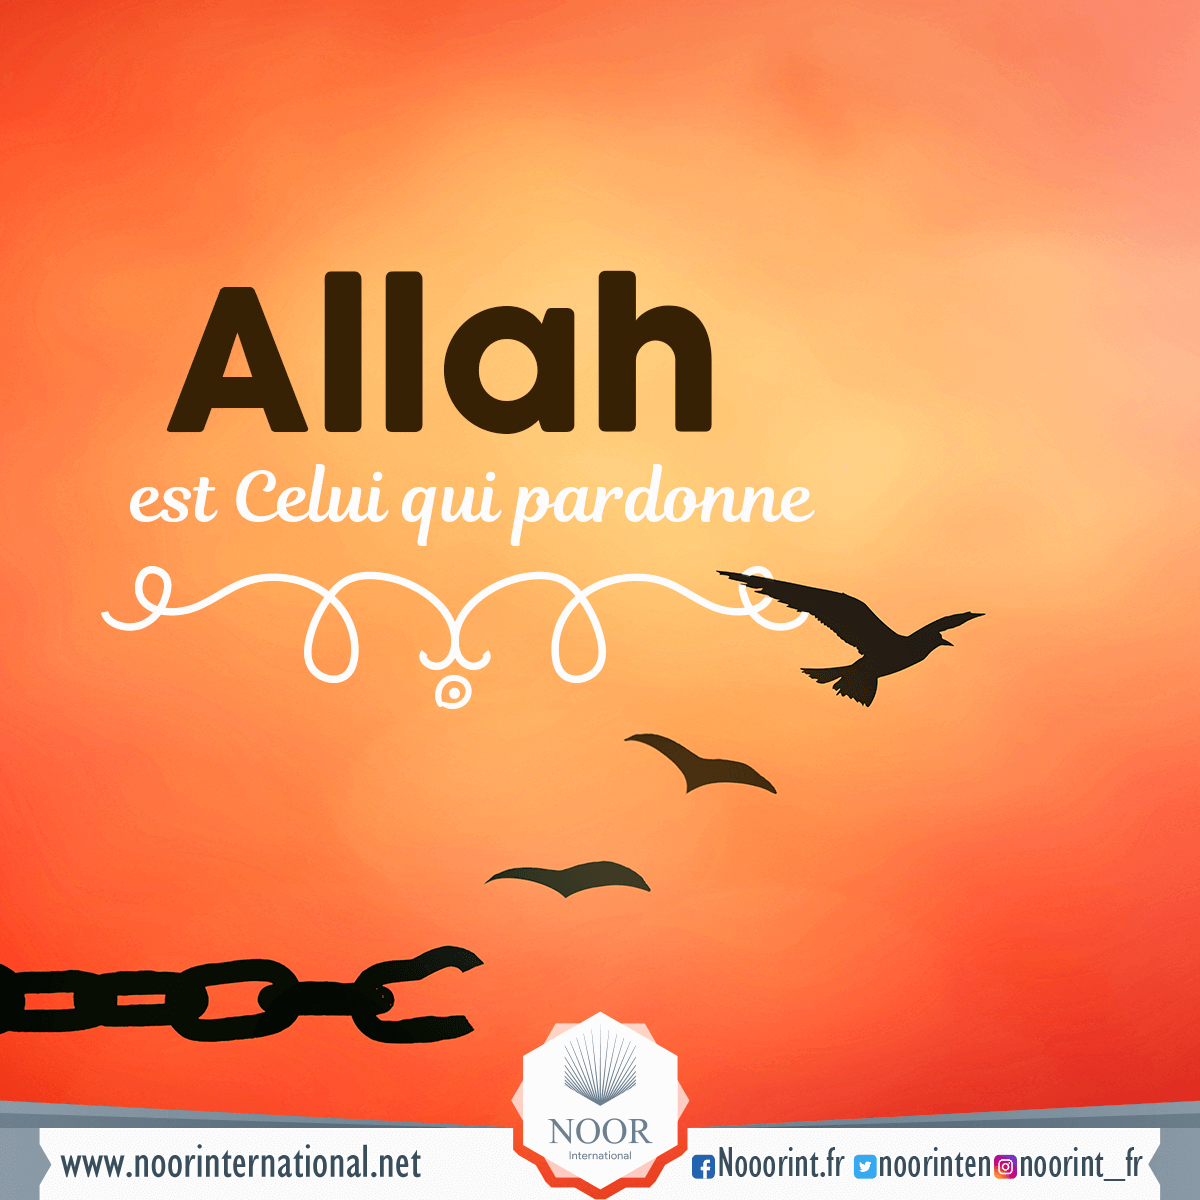 Allah est Celui qui pardonne